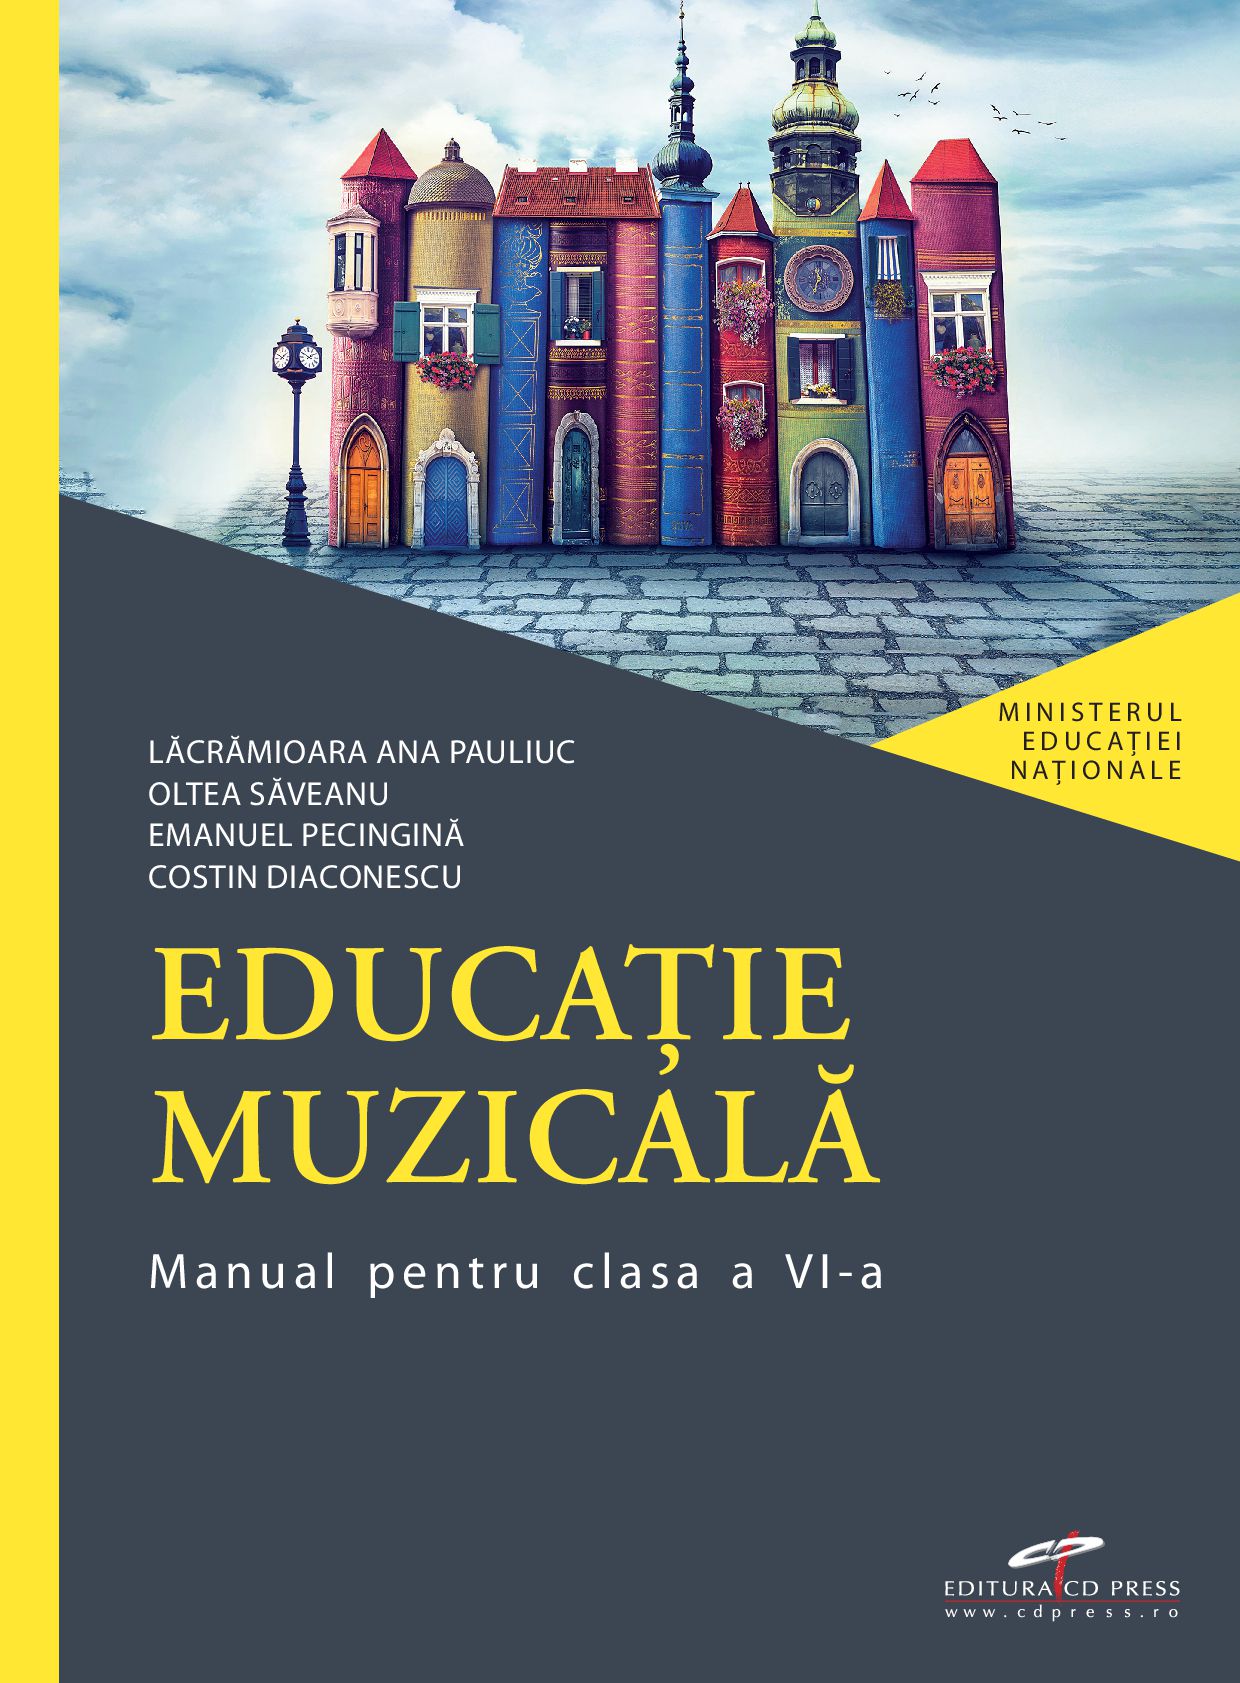 Manual de educatie muzicala - Clasa a VI-a